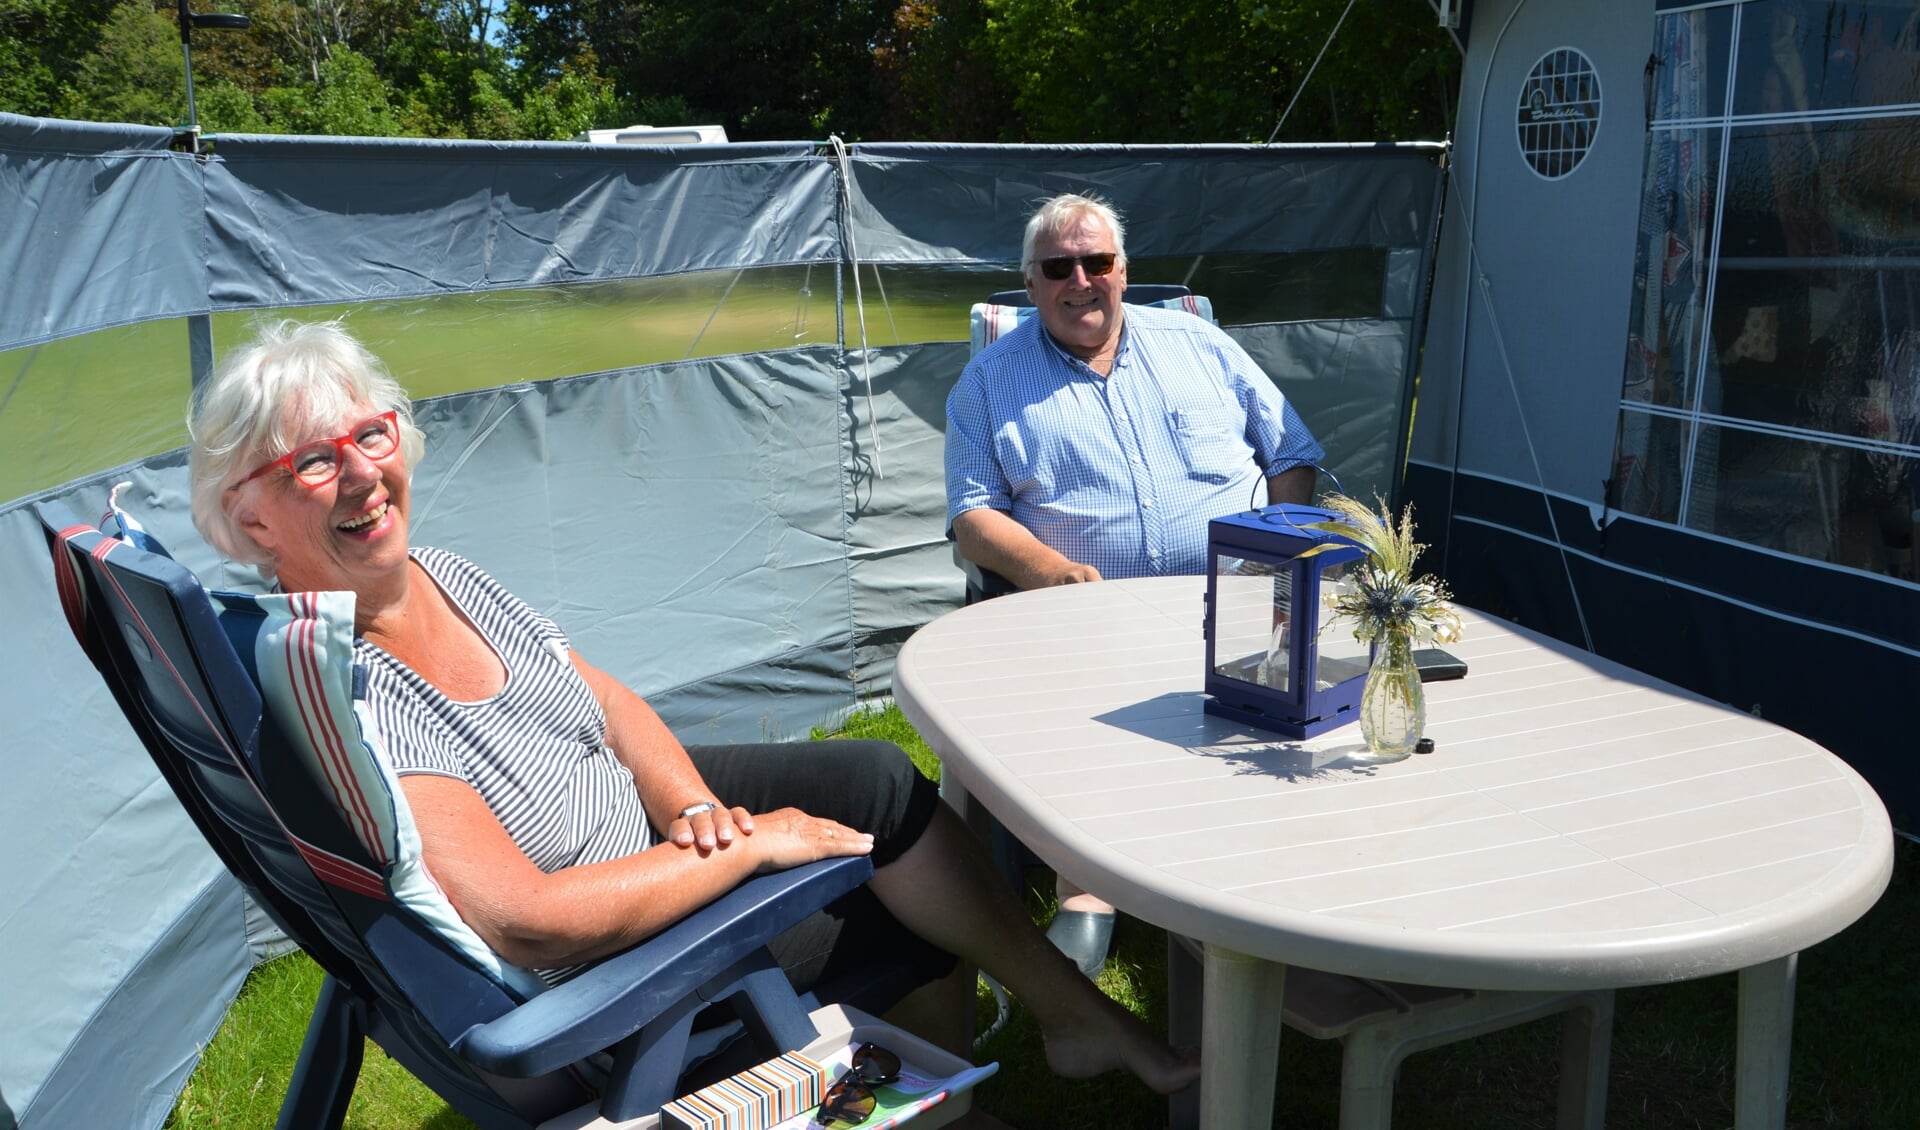 Klasje en Jan Schotsman uit Nieuwe Niedorp genieten volop van hun vakantie op camping 't Woutershok. 